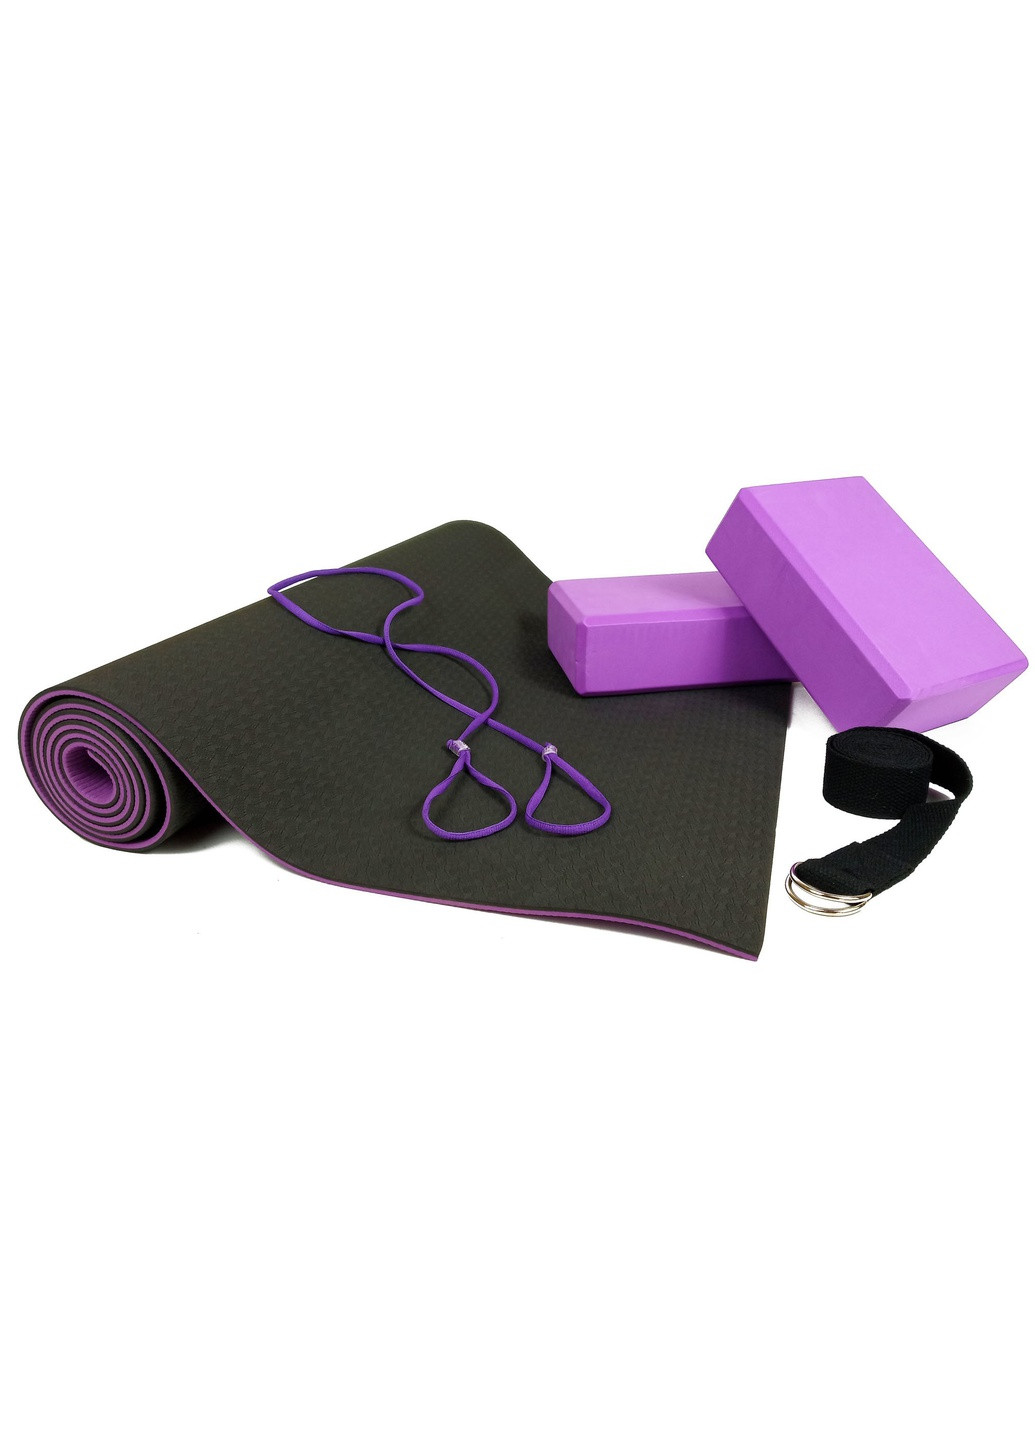 Набор для йоги PRO (EF-YPBV) - коврик для йоги (каремат, йогамат для фитнеса), два блока (кирпича) и ремень (лямка) EasyFit (241229805)